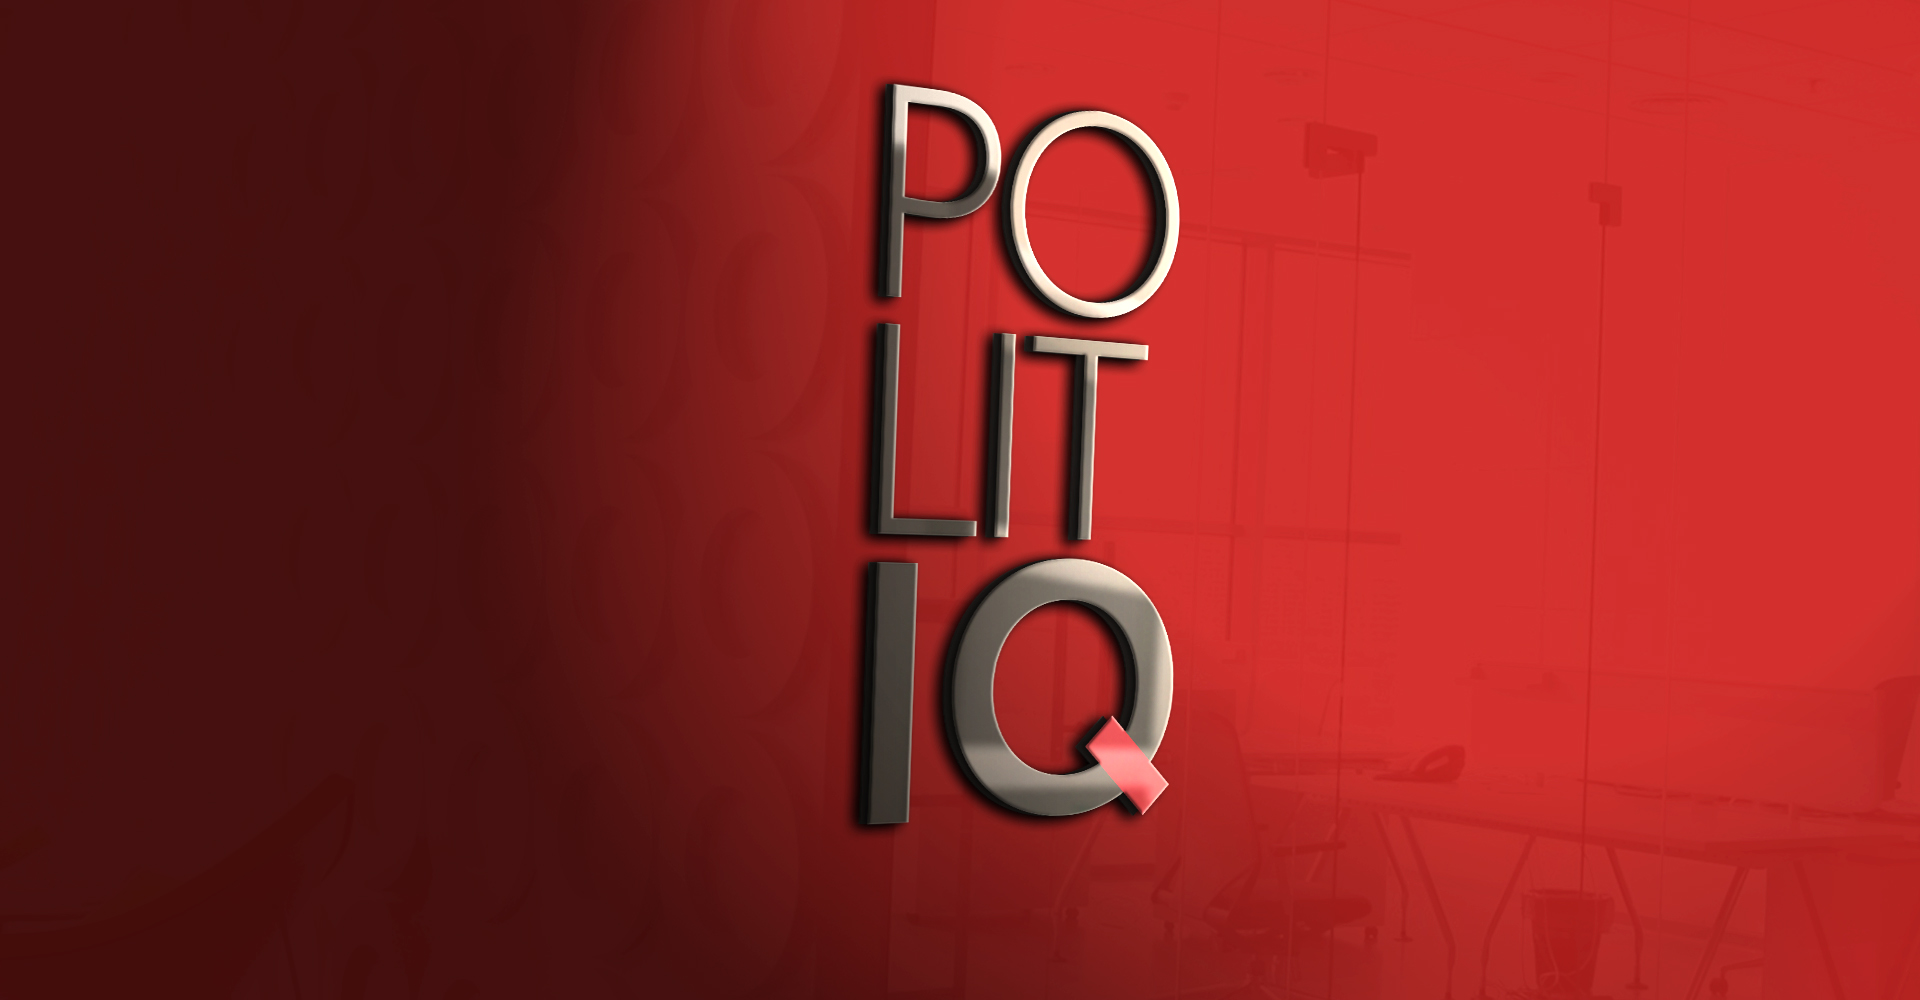 Политология. PolitIQ: политическое образование и летние школы за рубежом